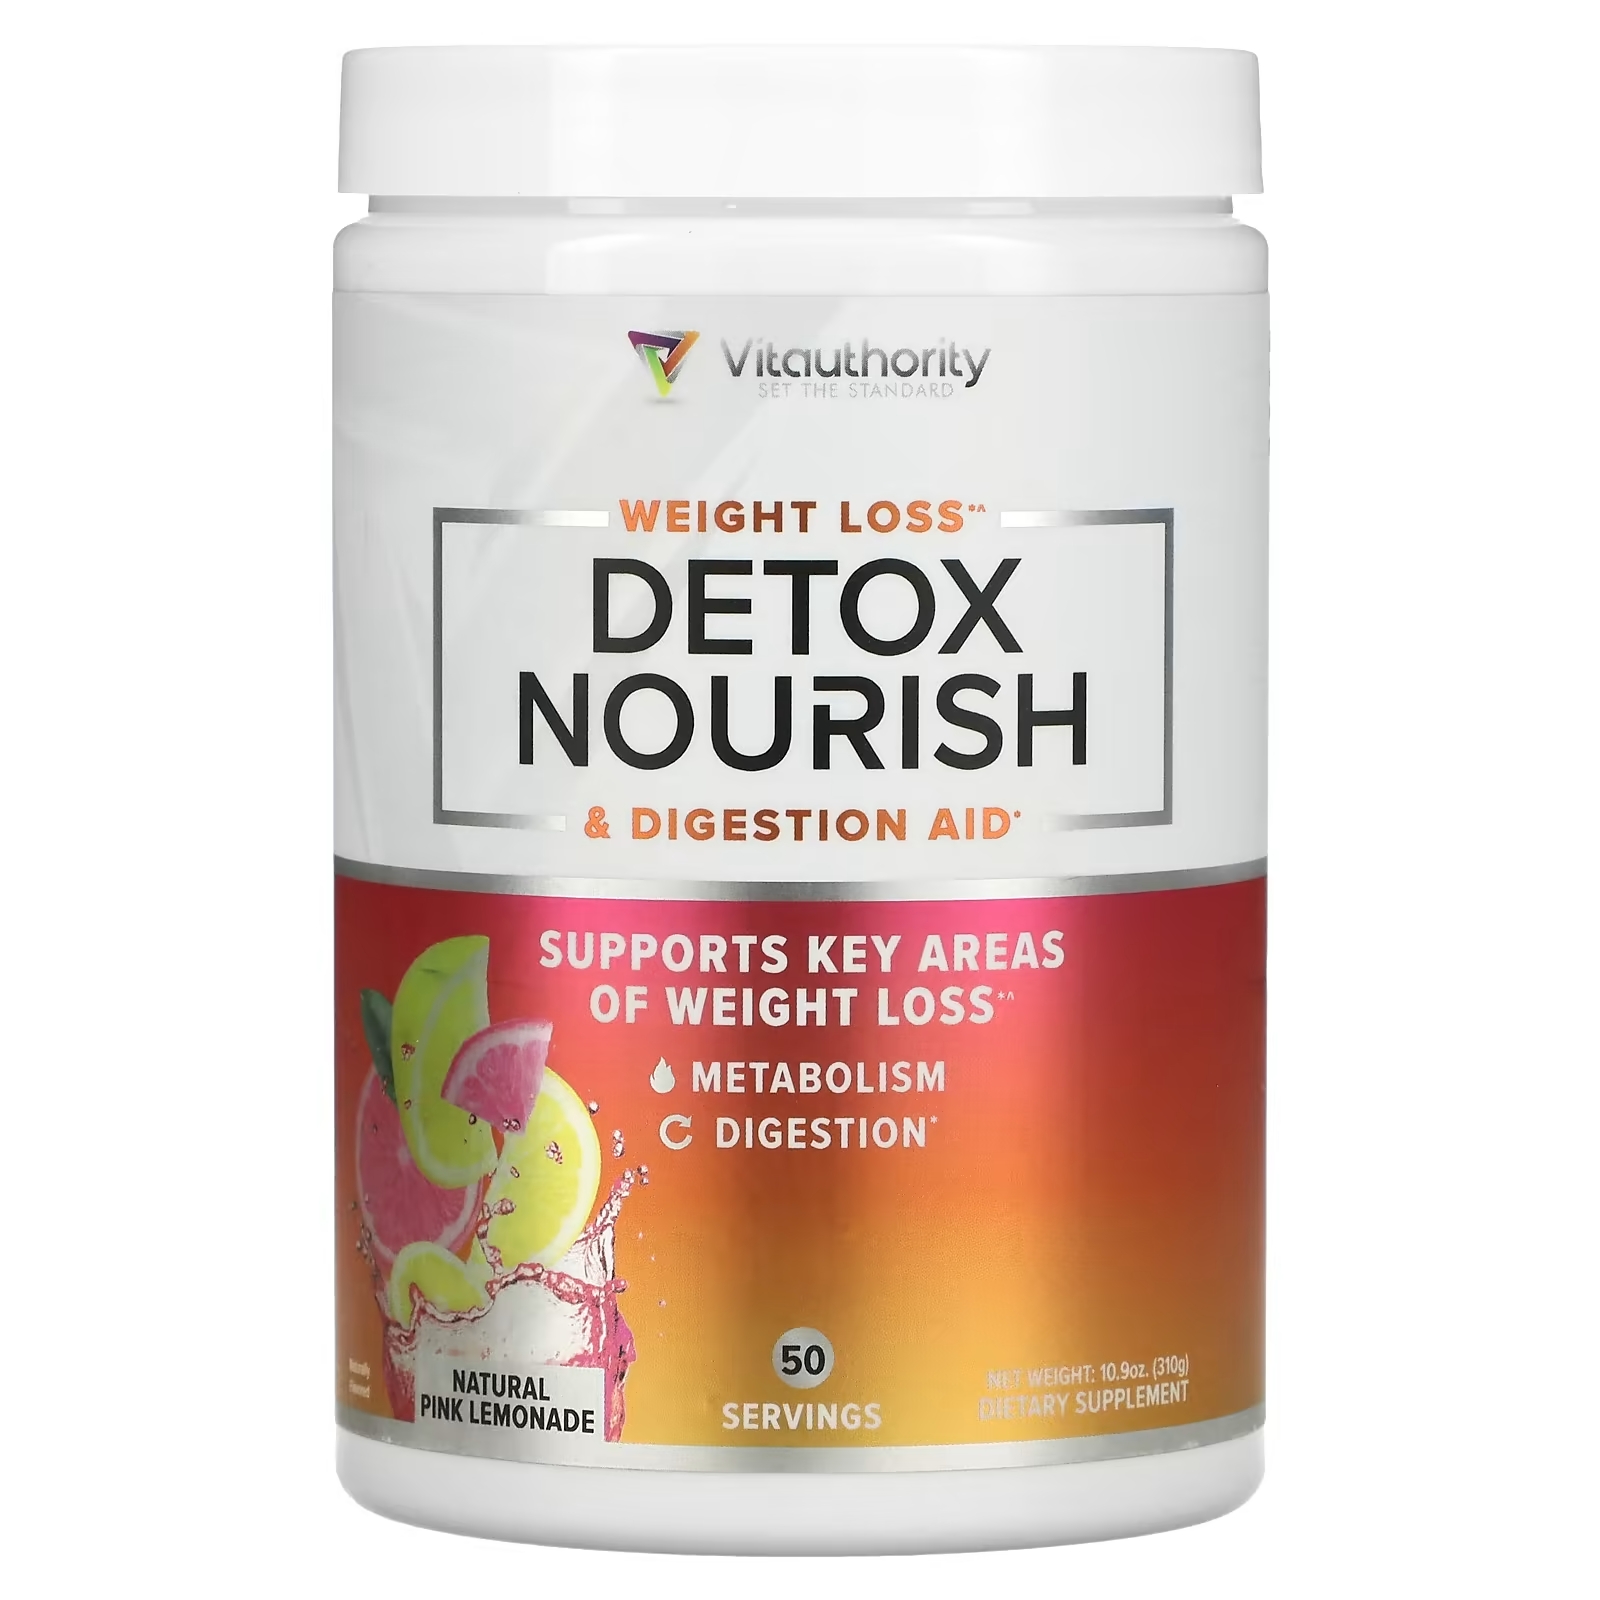 Vitauthority Weight Loss Detox Nourish & Digestion Aid Natural Pink Lemonade, 310 г vitauthority detox nourish средство для снижения веса и поддержки пищеварения натуральный арбуз 310 г 10 9 унции